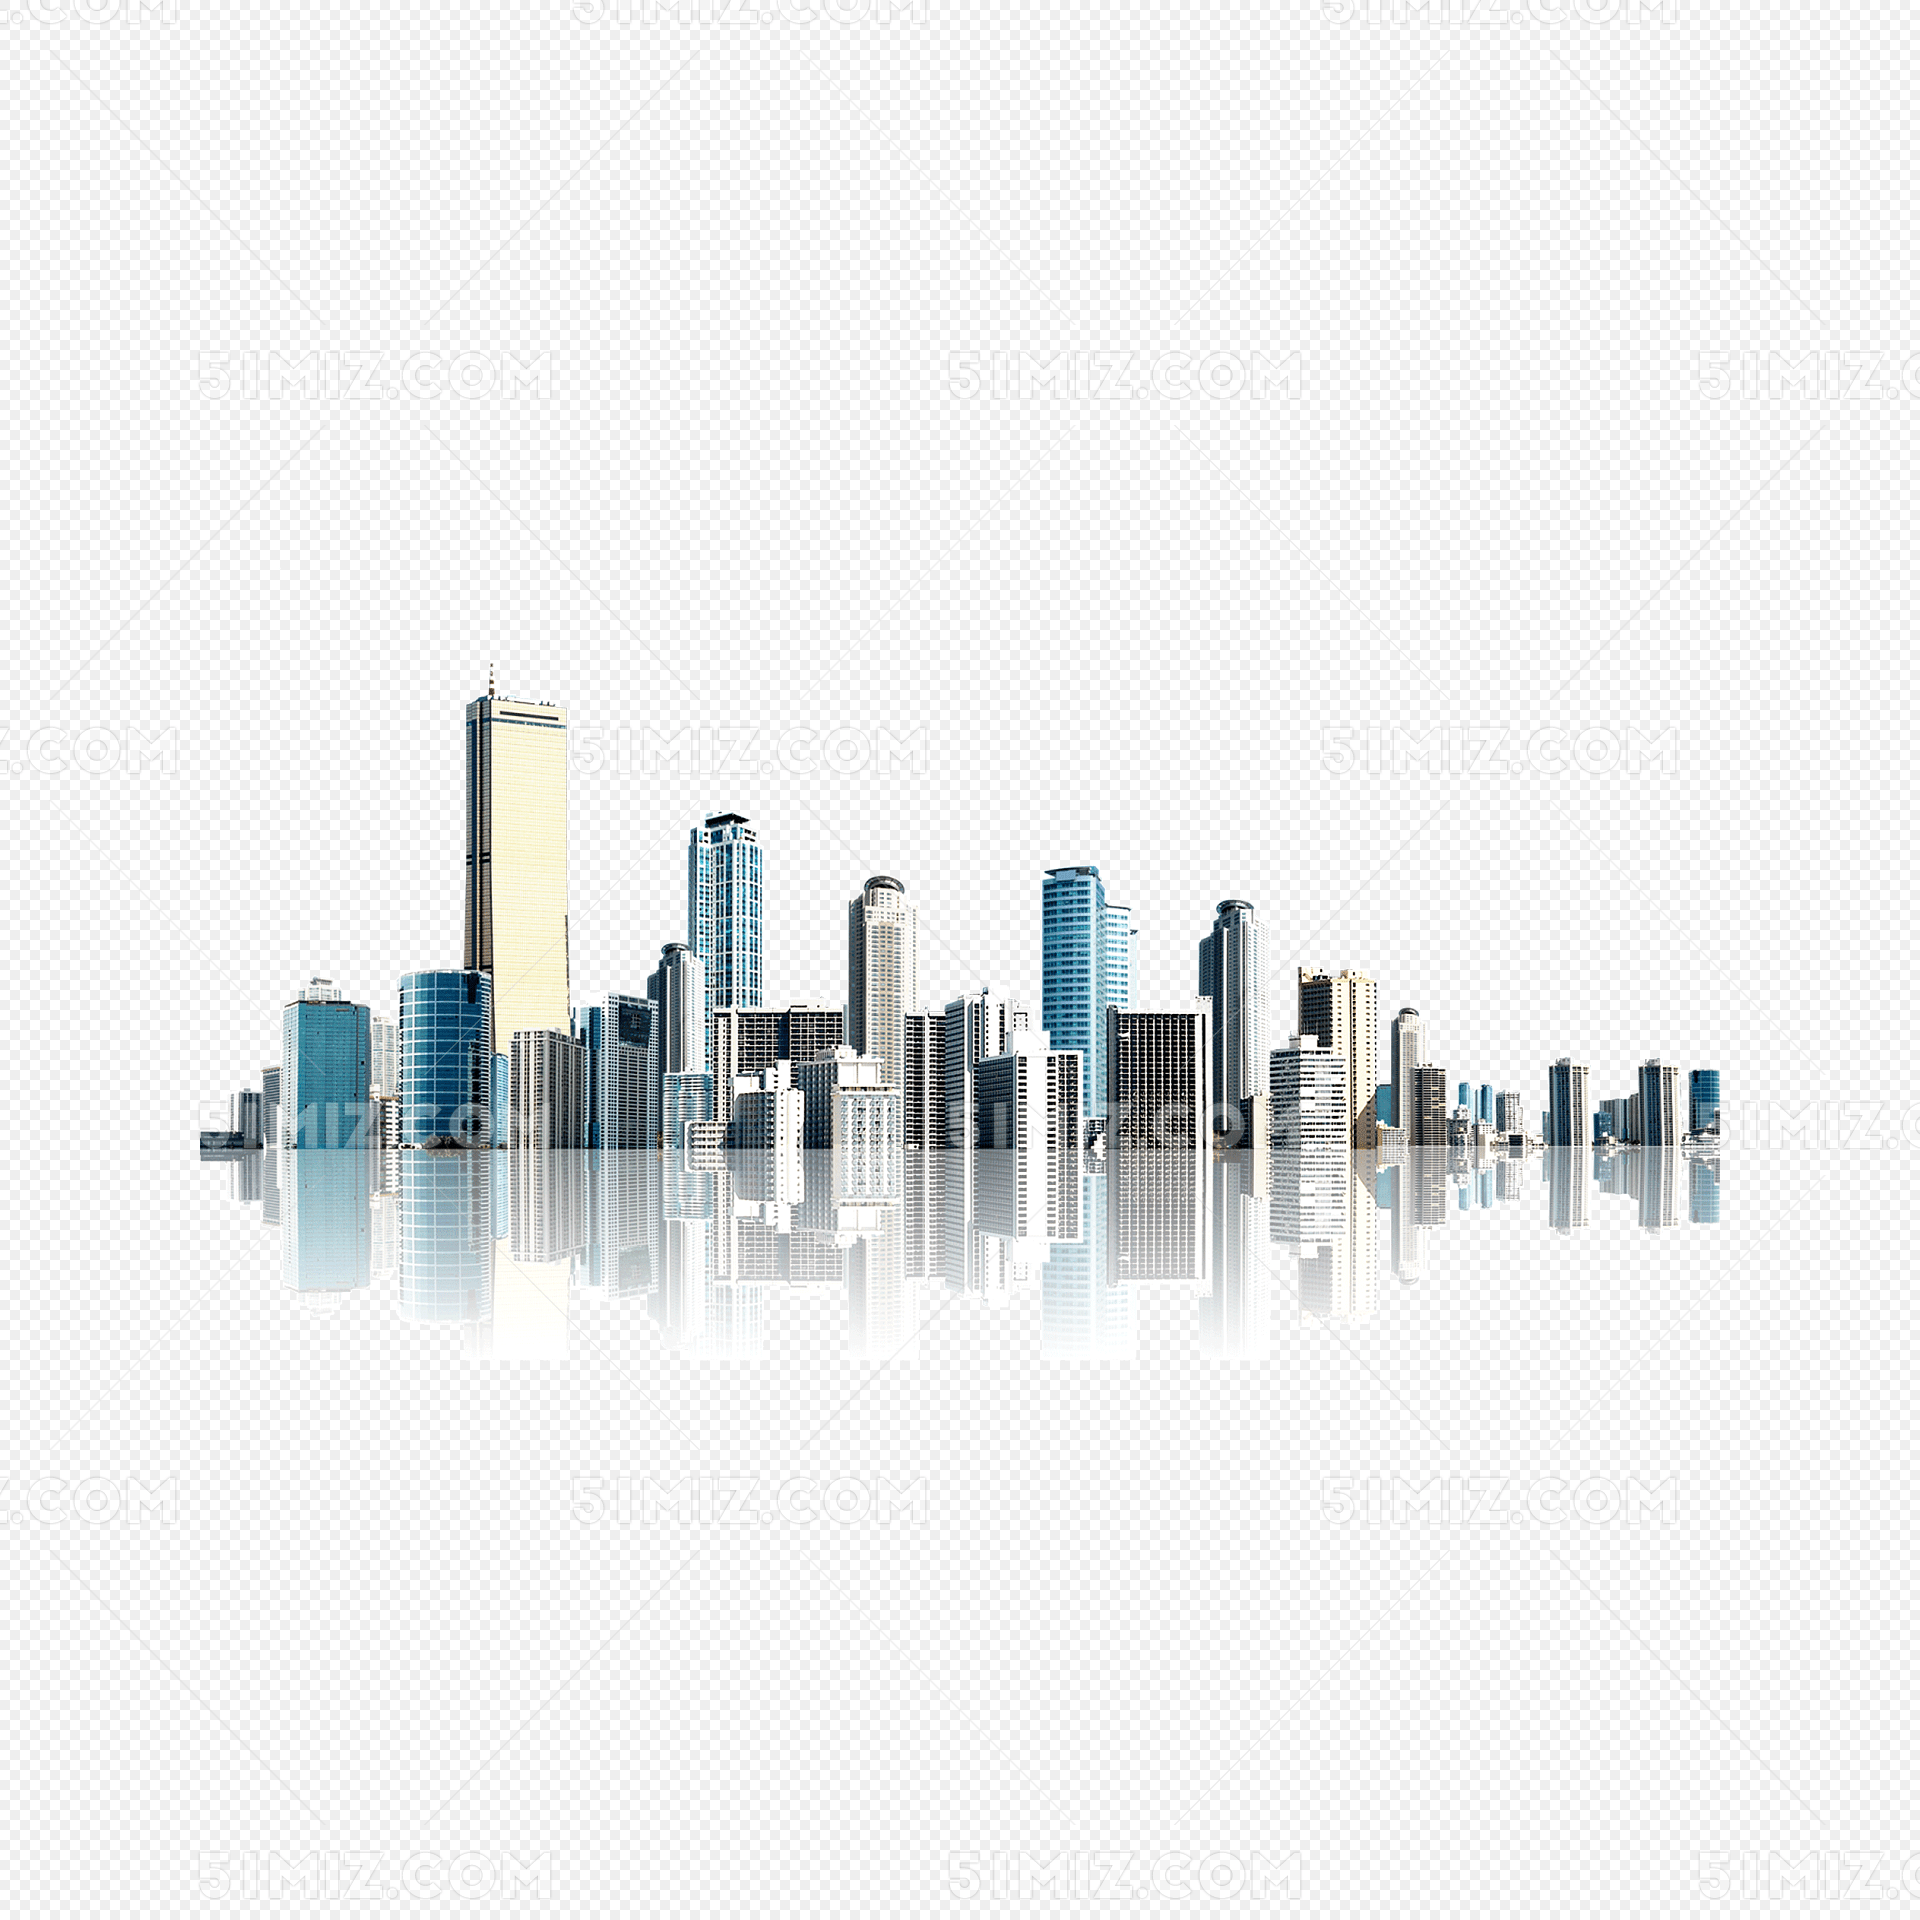 城市建筑高楼写实素材